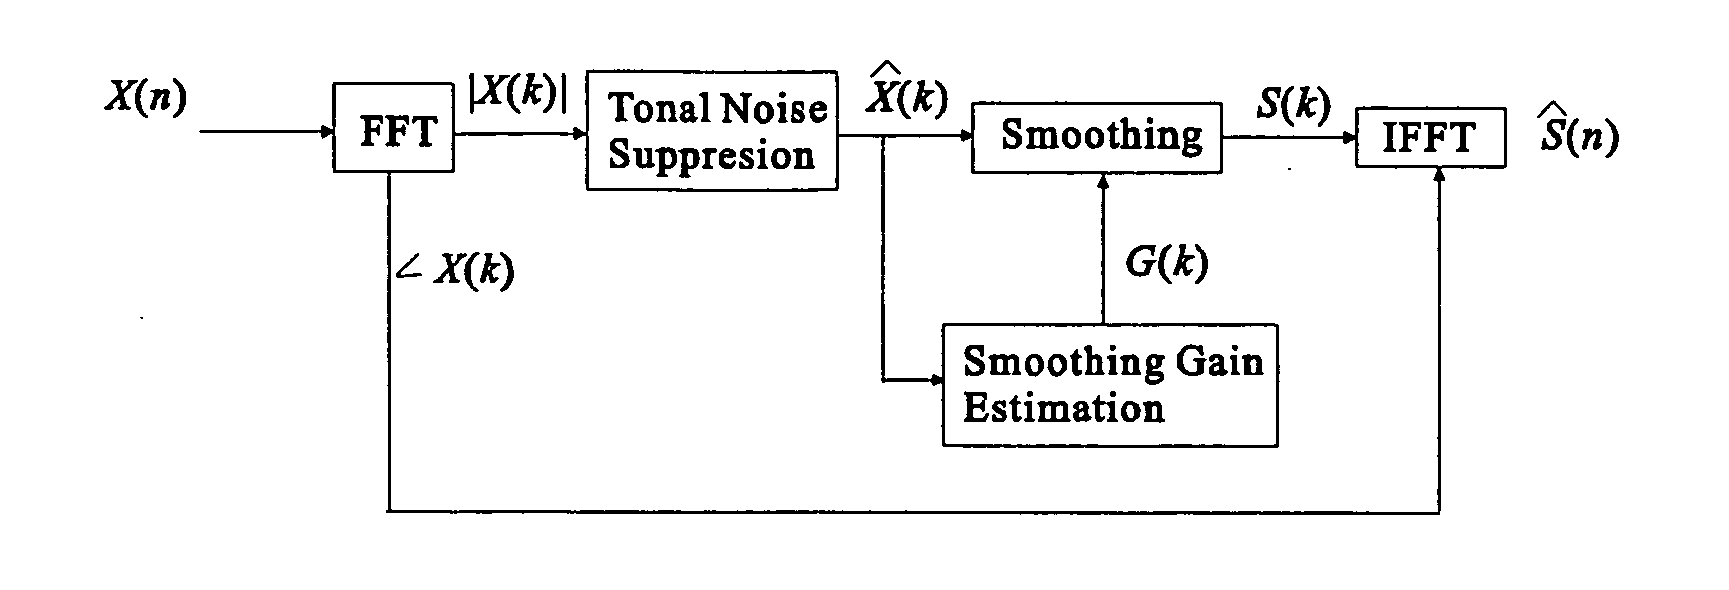 Speech enhancement by noise masking